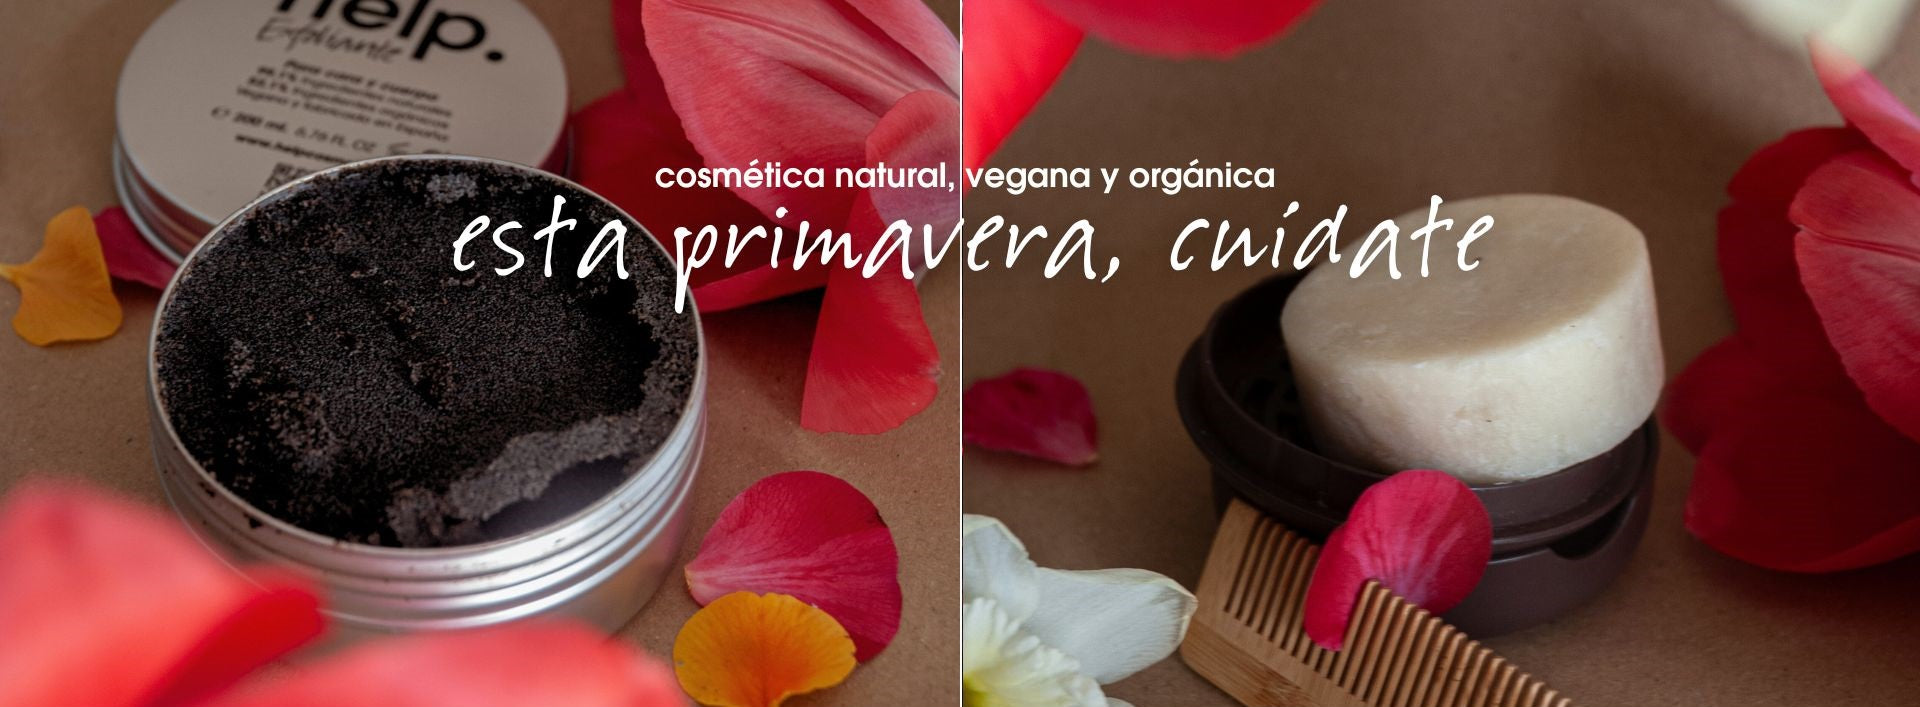 cosmetica organica